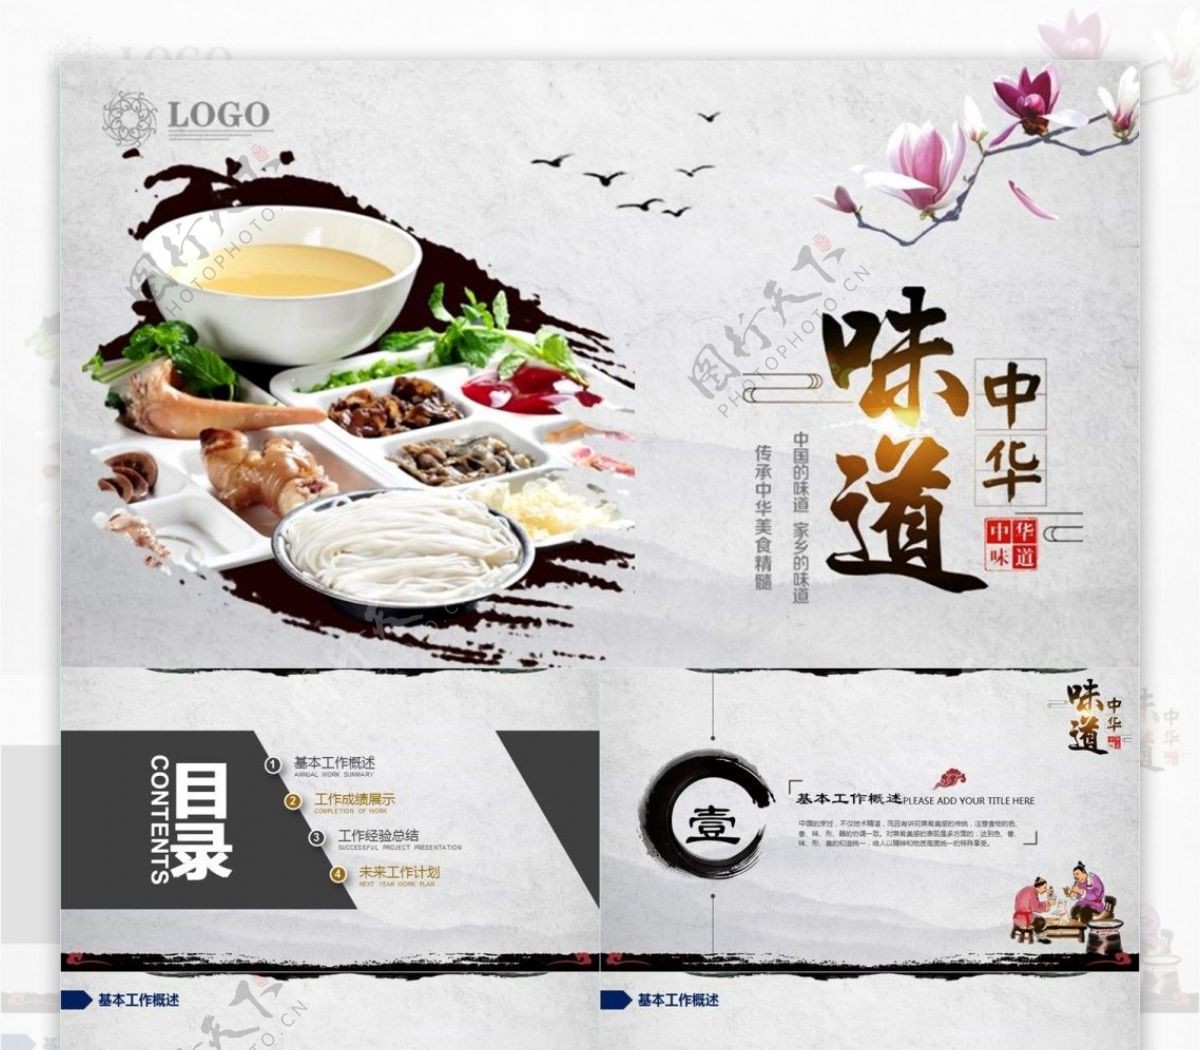 中国风餐饮中国饮食文化PPT模板